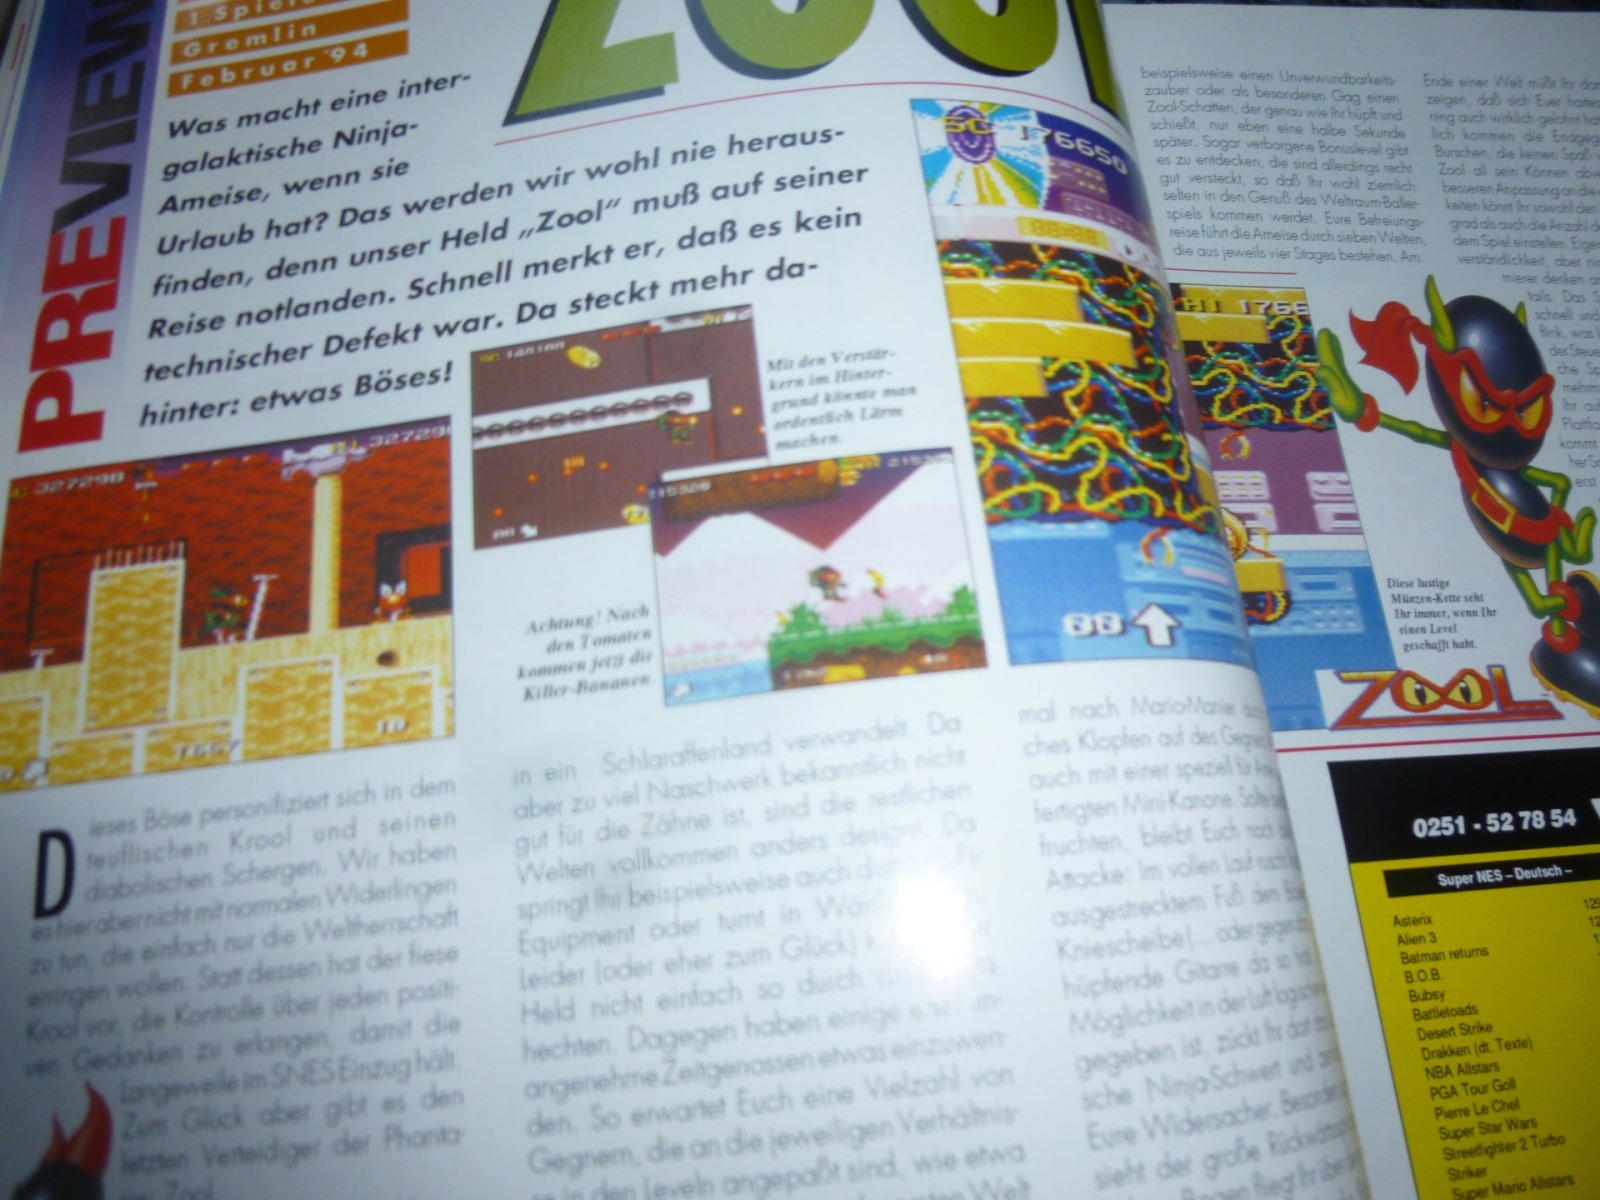 TOTAL Das unabhängige Magazin - 100 Nintendo - Ausgabe 12/93 1993 6